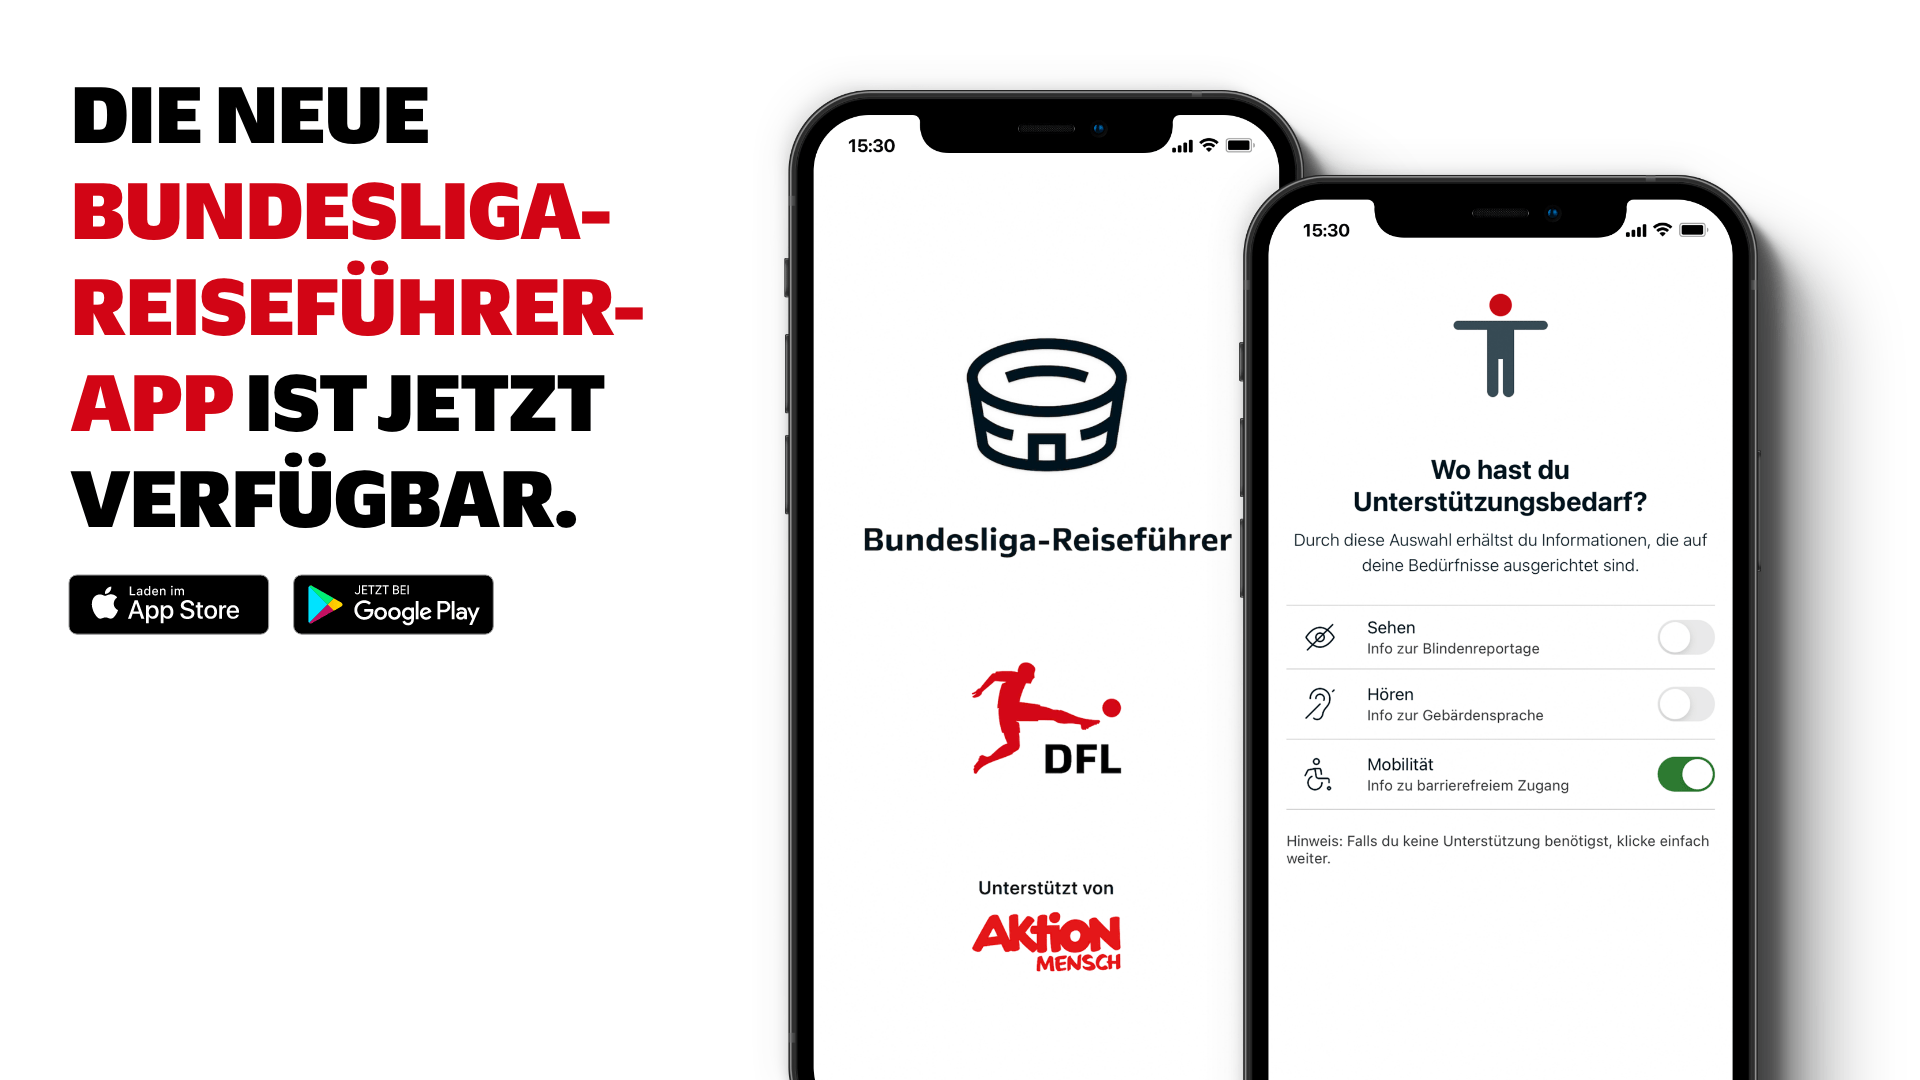 • "Die neue Bundesliga Reiseführer-App ist jetzt verfügbar"-Schriftzug. Daneben zwei Smartphones mit dem Titelbild der App und dem Menü, in dem der Unterstützungsbedarf eingestellt wird.